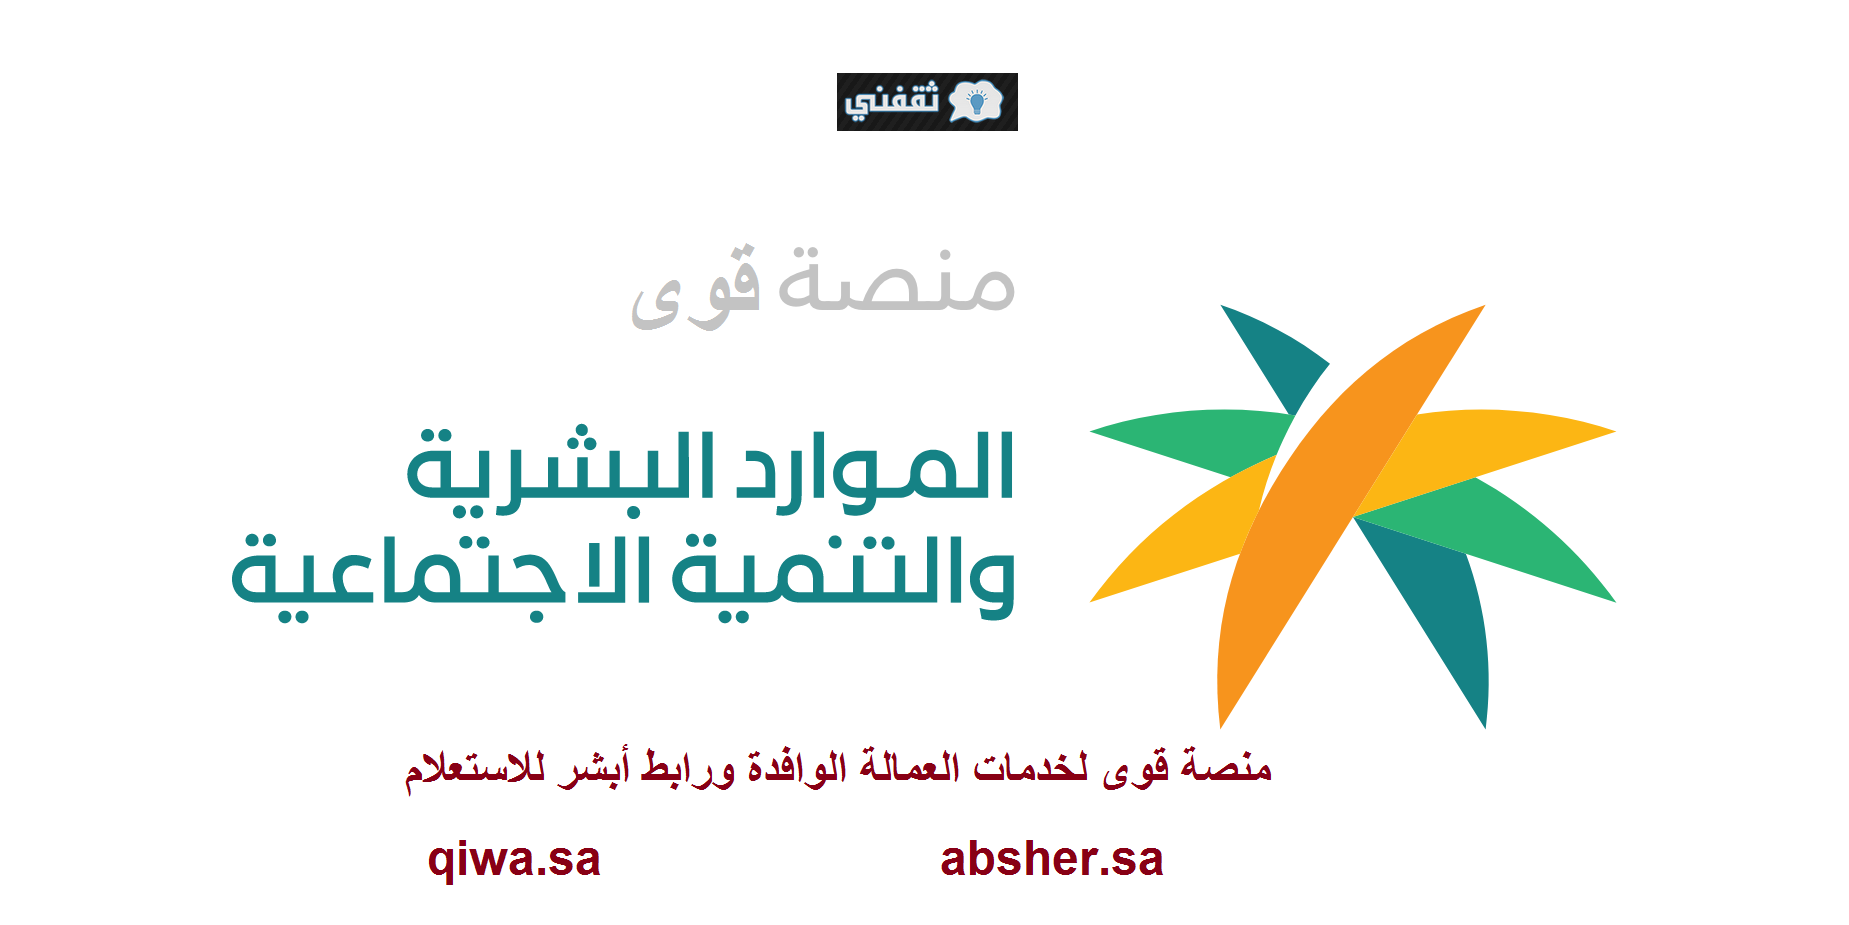 رابط منصة قوى تسجيل خدمات العمالة الوافدة  qiwa.sa لخدمة المنشآت والأفراد وزارة الموارد البشرية إلغاء نظام الكفيل